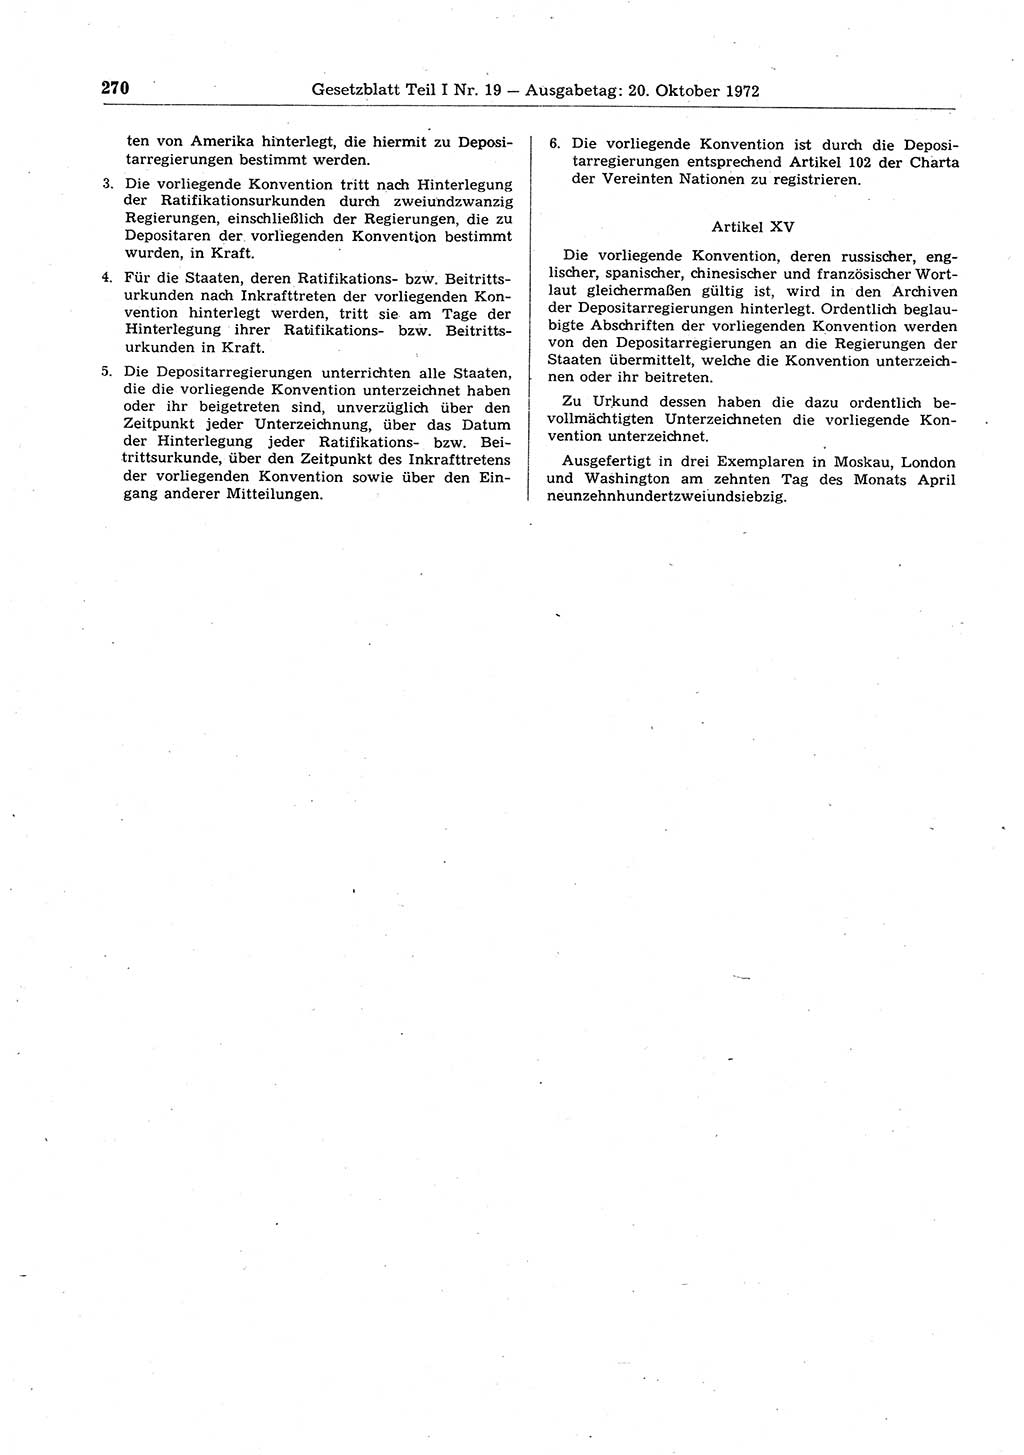 Gesetzblatt (GBl.) der Deutschen Demokratischen Republik (DDR) Teil Ⅰ 1972, Seite 270 (GBl. DDR Ⅰ 1972, S. 270)